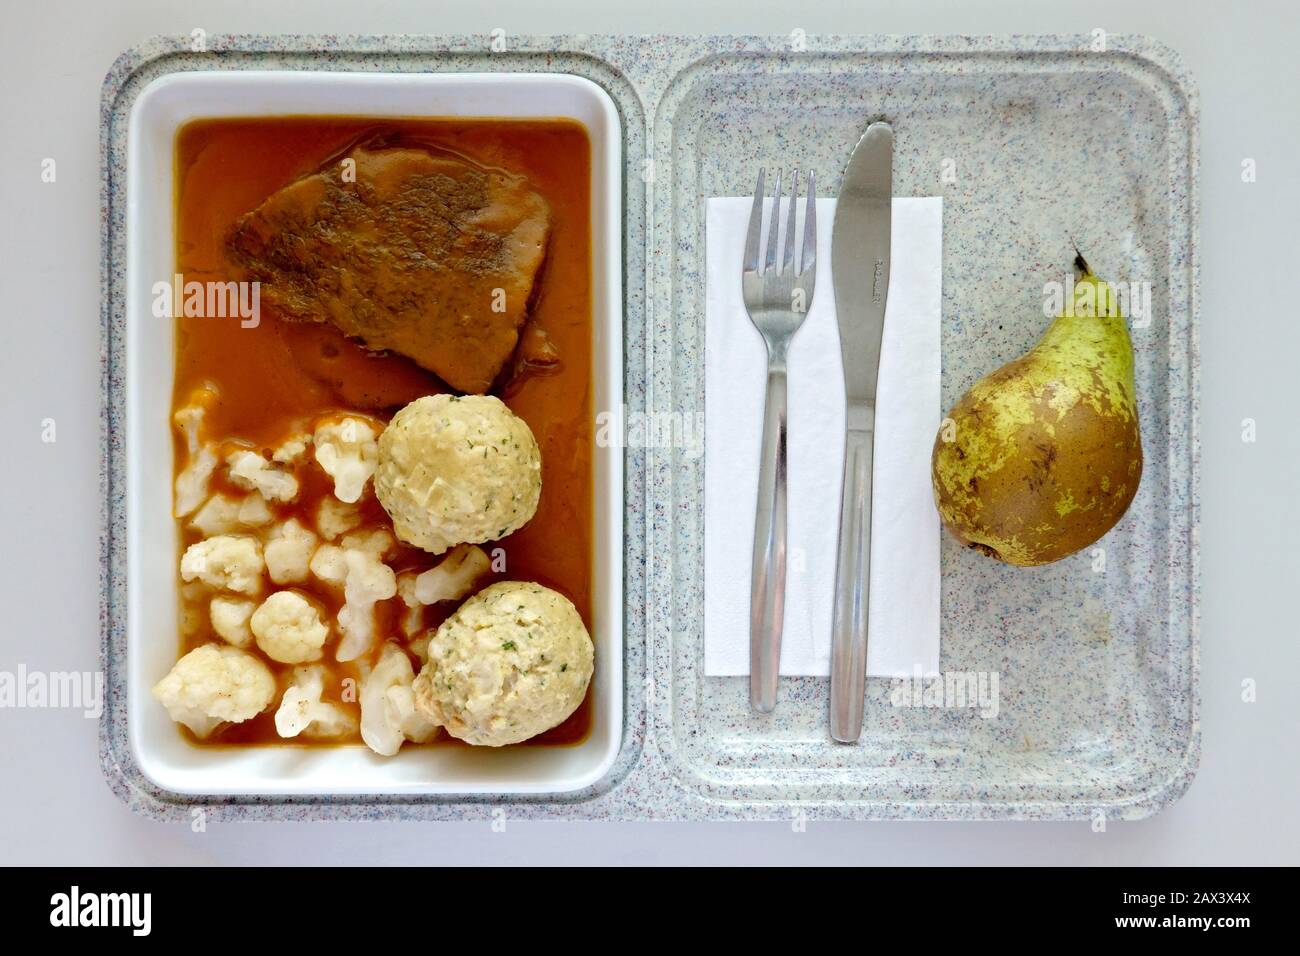 Repas prêt, déjeuner déficient à l'hôpital, bœuf rôti, sauce, boulettes de pain, chou-fleur, poire, Allemagne Banque D'Images